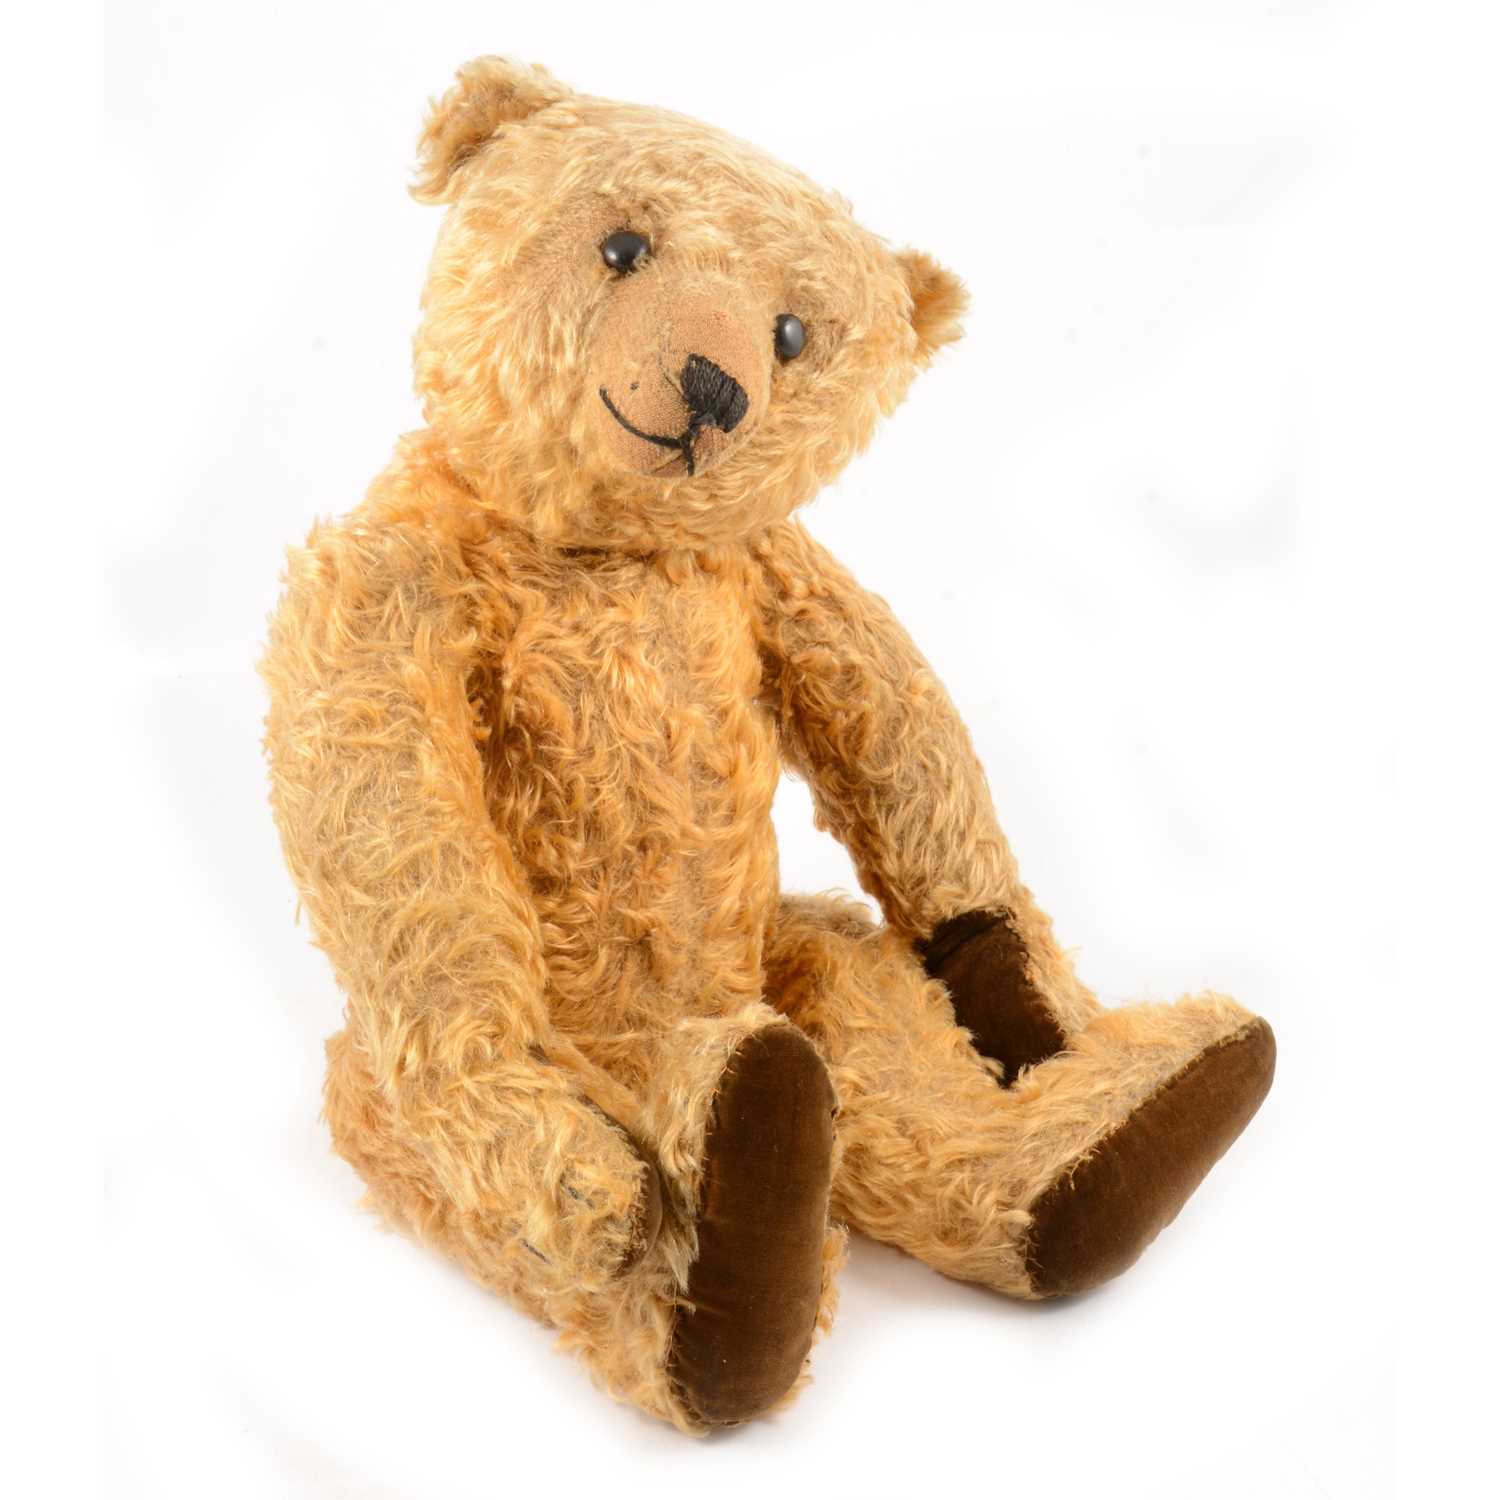 285 - Steiff Teddy bear, 'Grumbly' early 20th century golden long mohair fur.